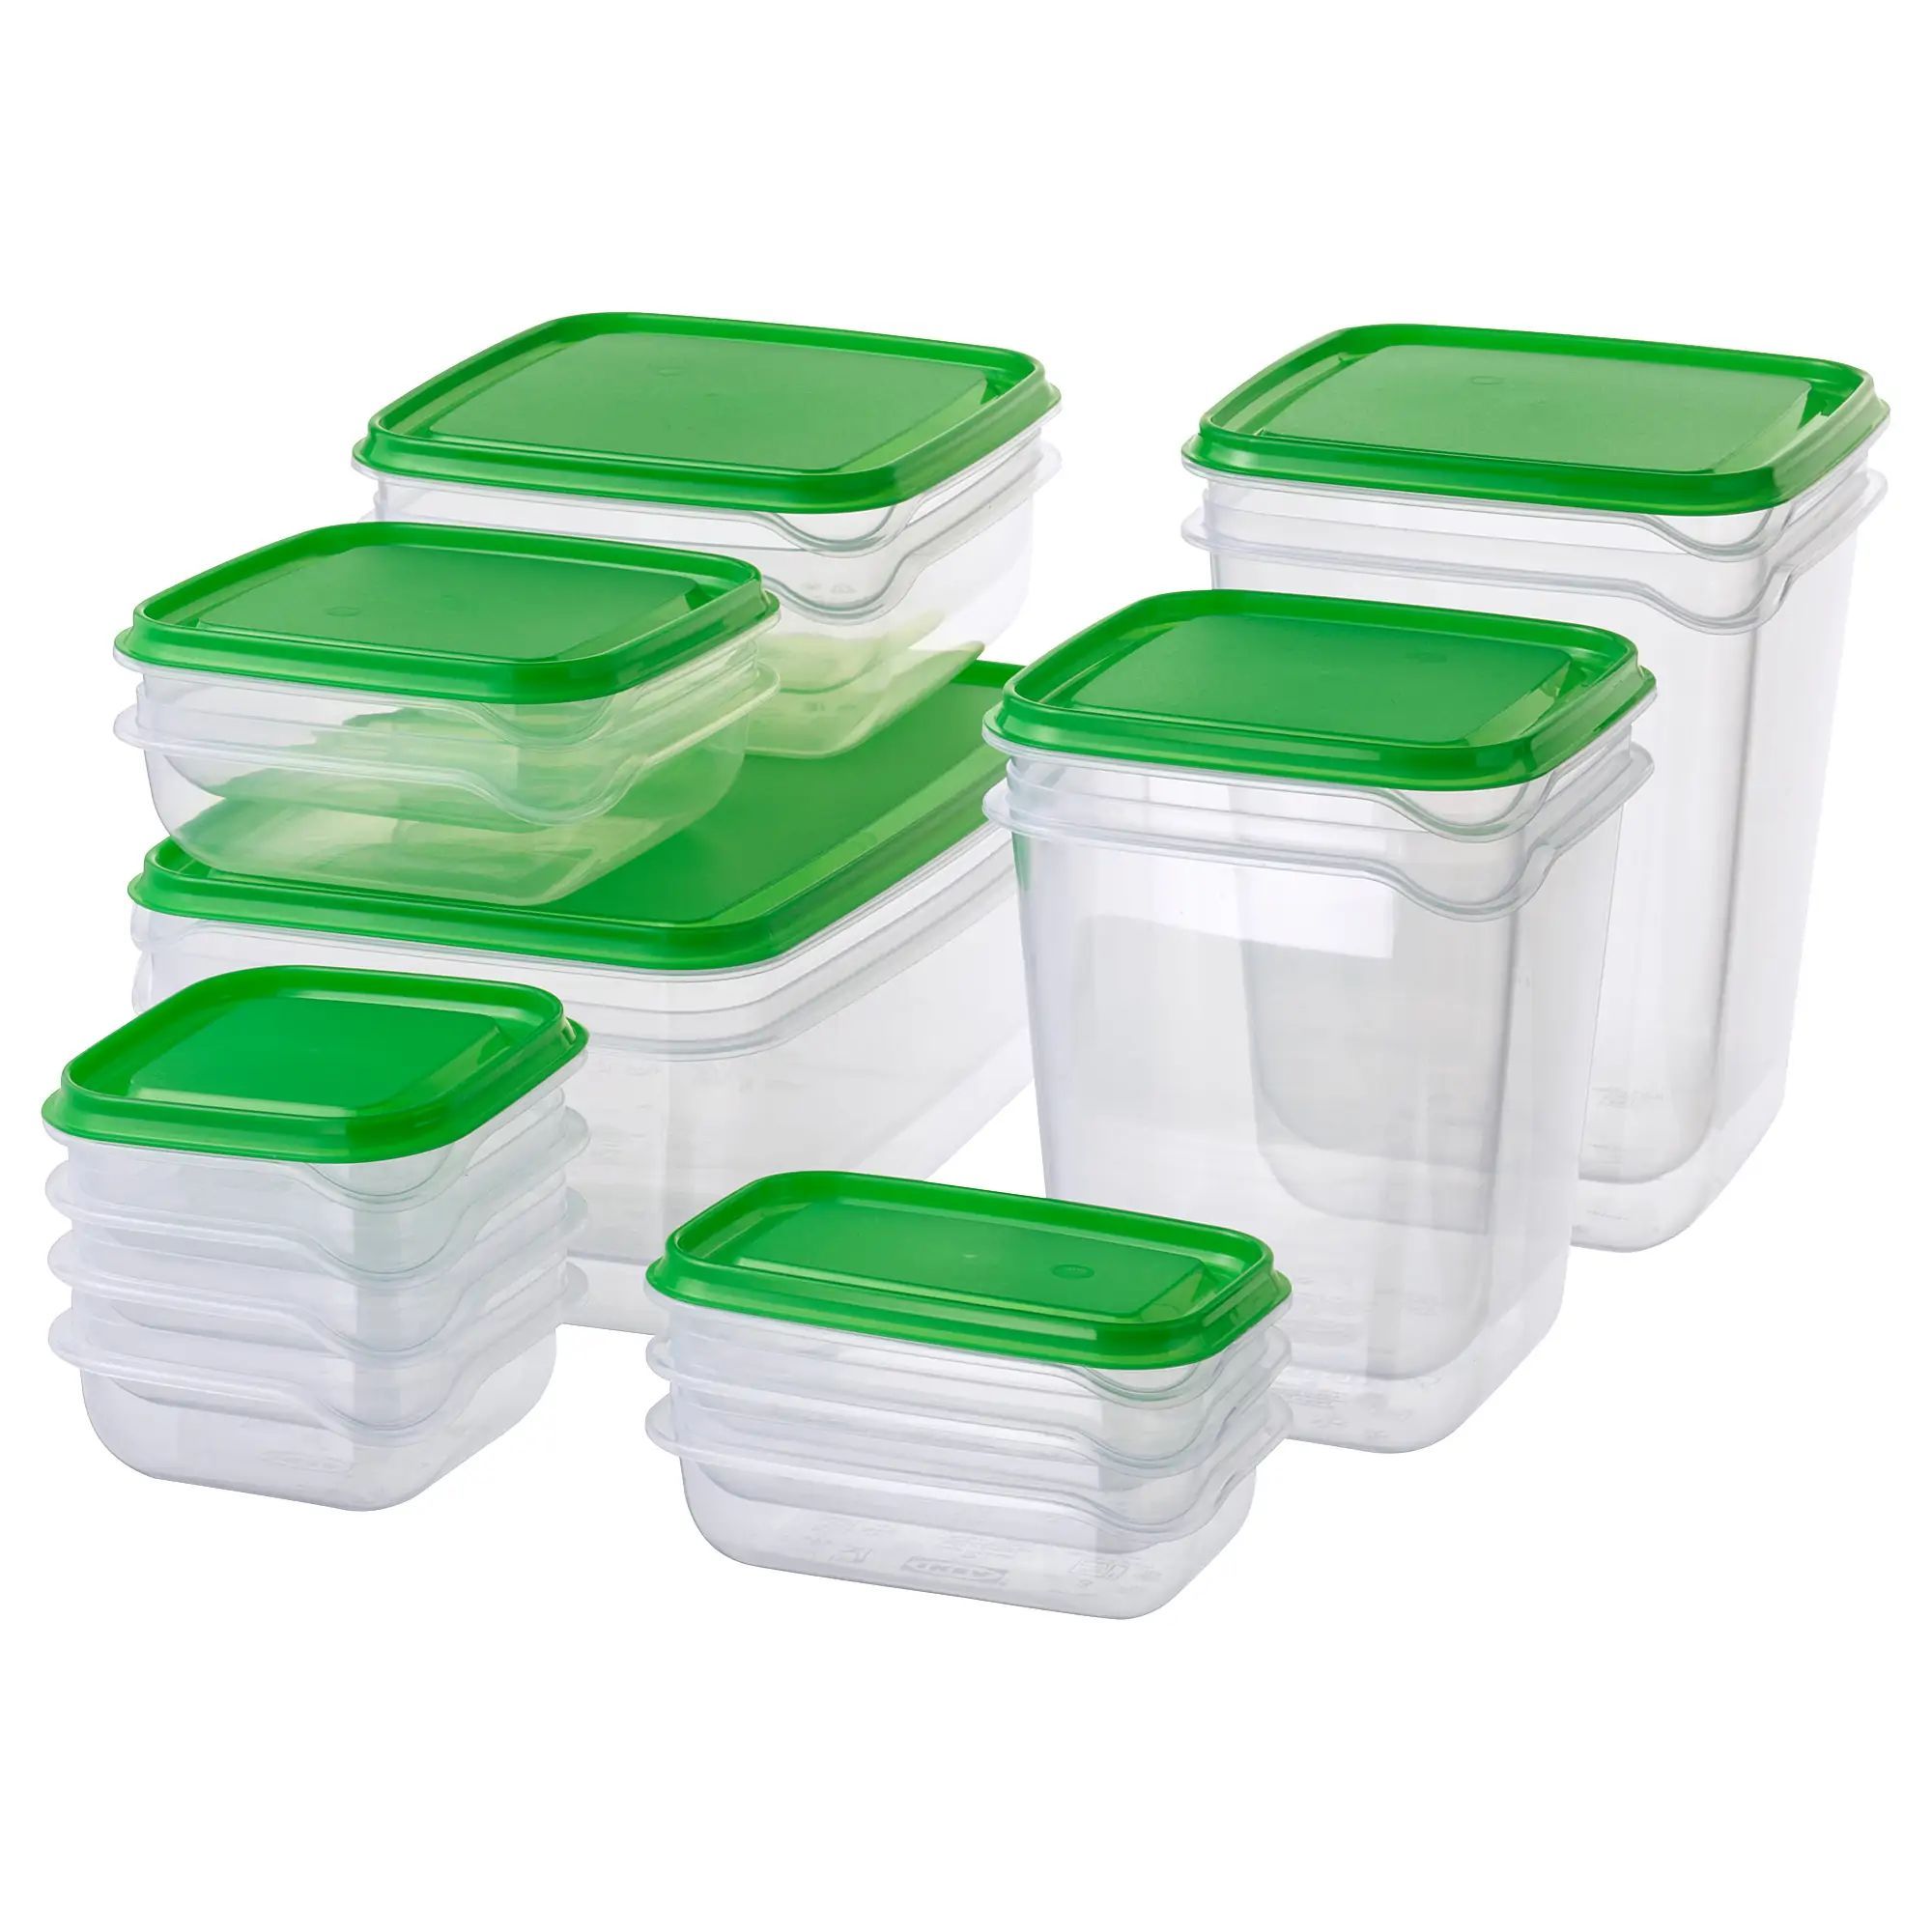 Купить контейнер икеа. Pruta прута набор контейнеров 17 шт прозрачный/зеленый. Pruta прута набор контейнеров 17 шт. Икеа набор контейнеров 17. Контейнеры прута икеа.